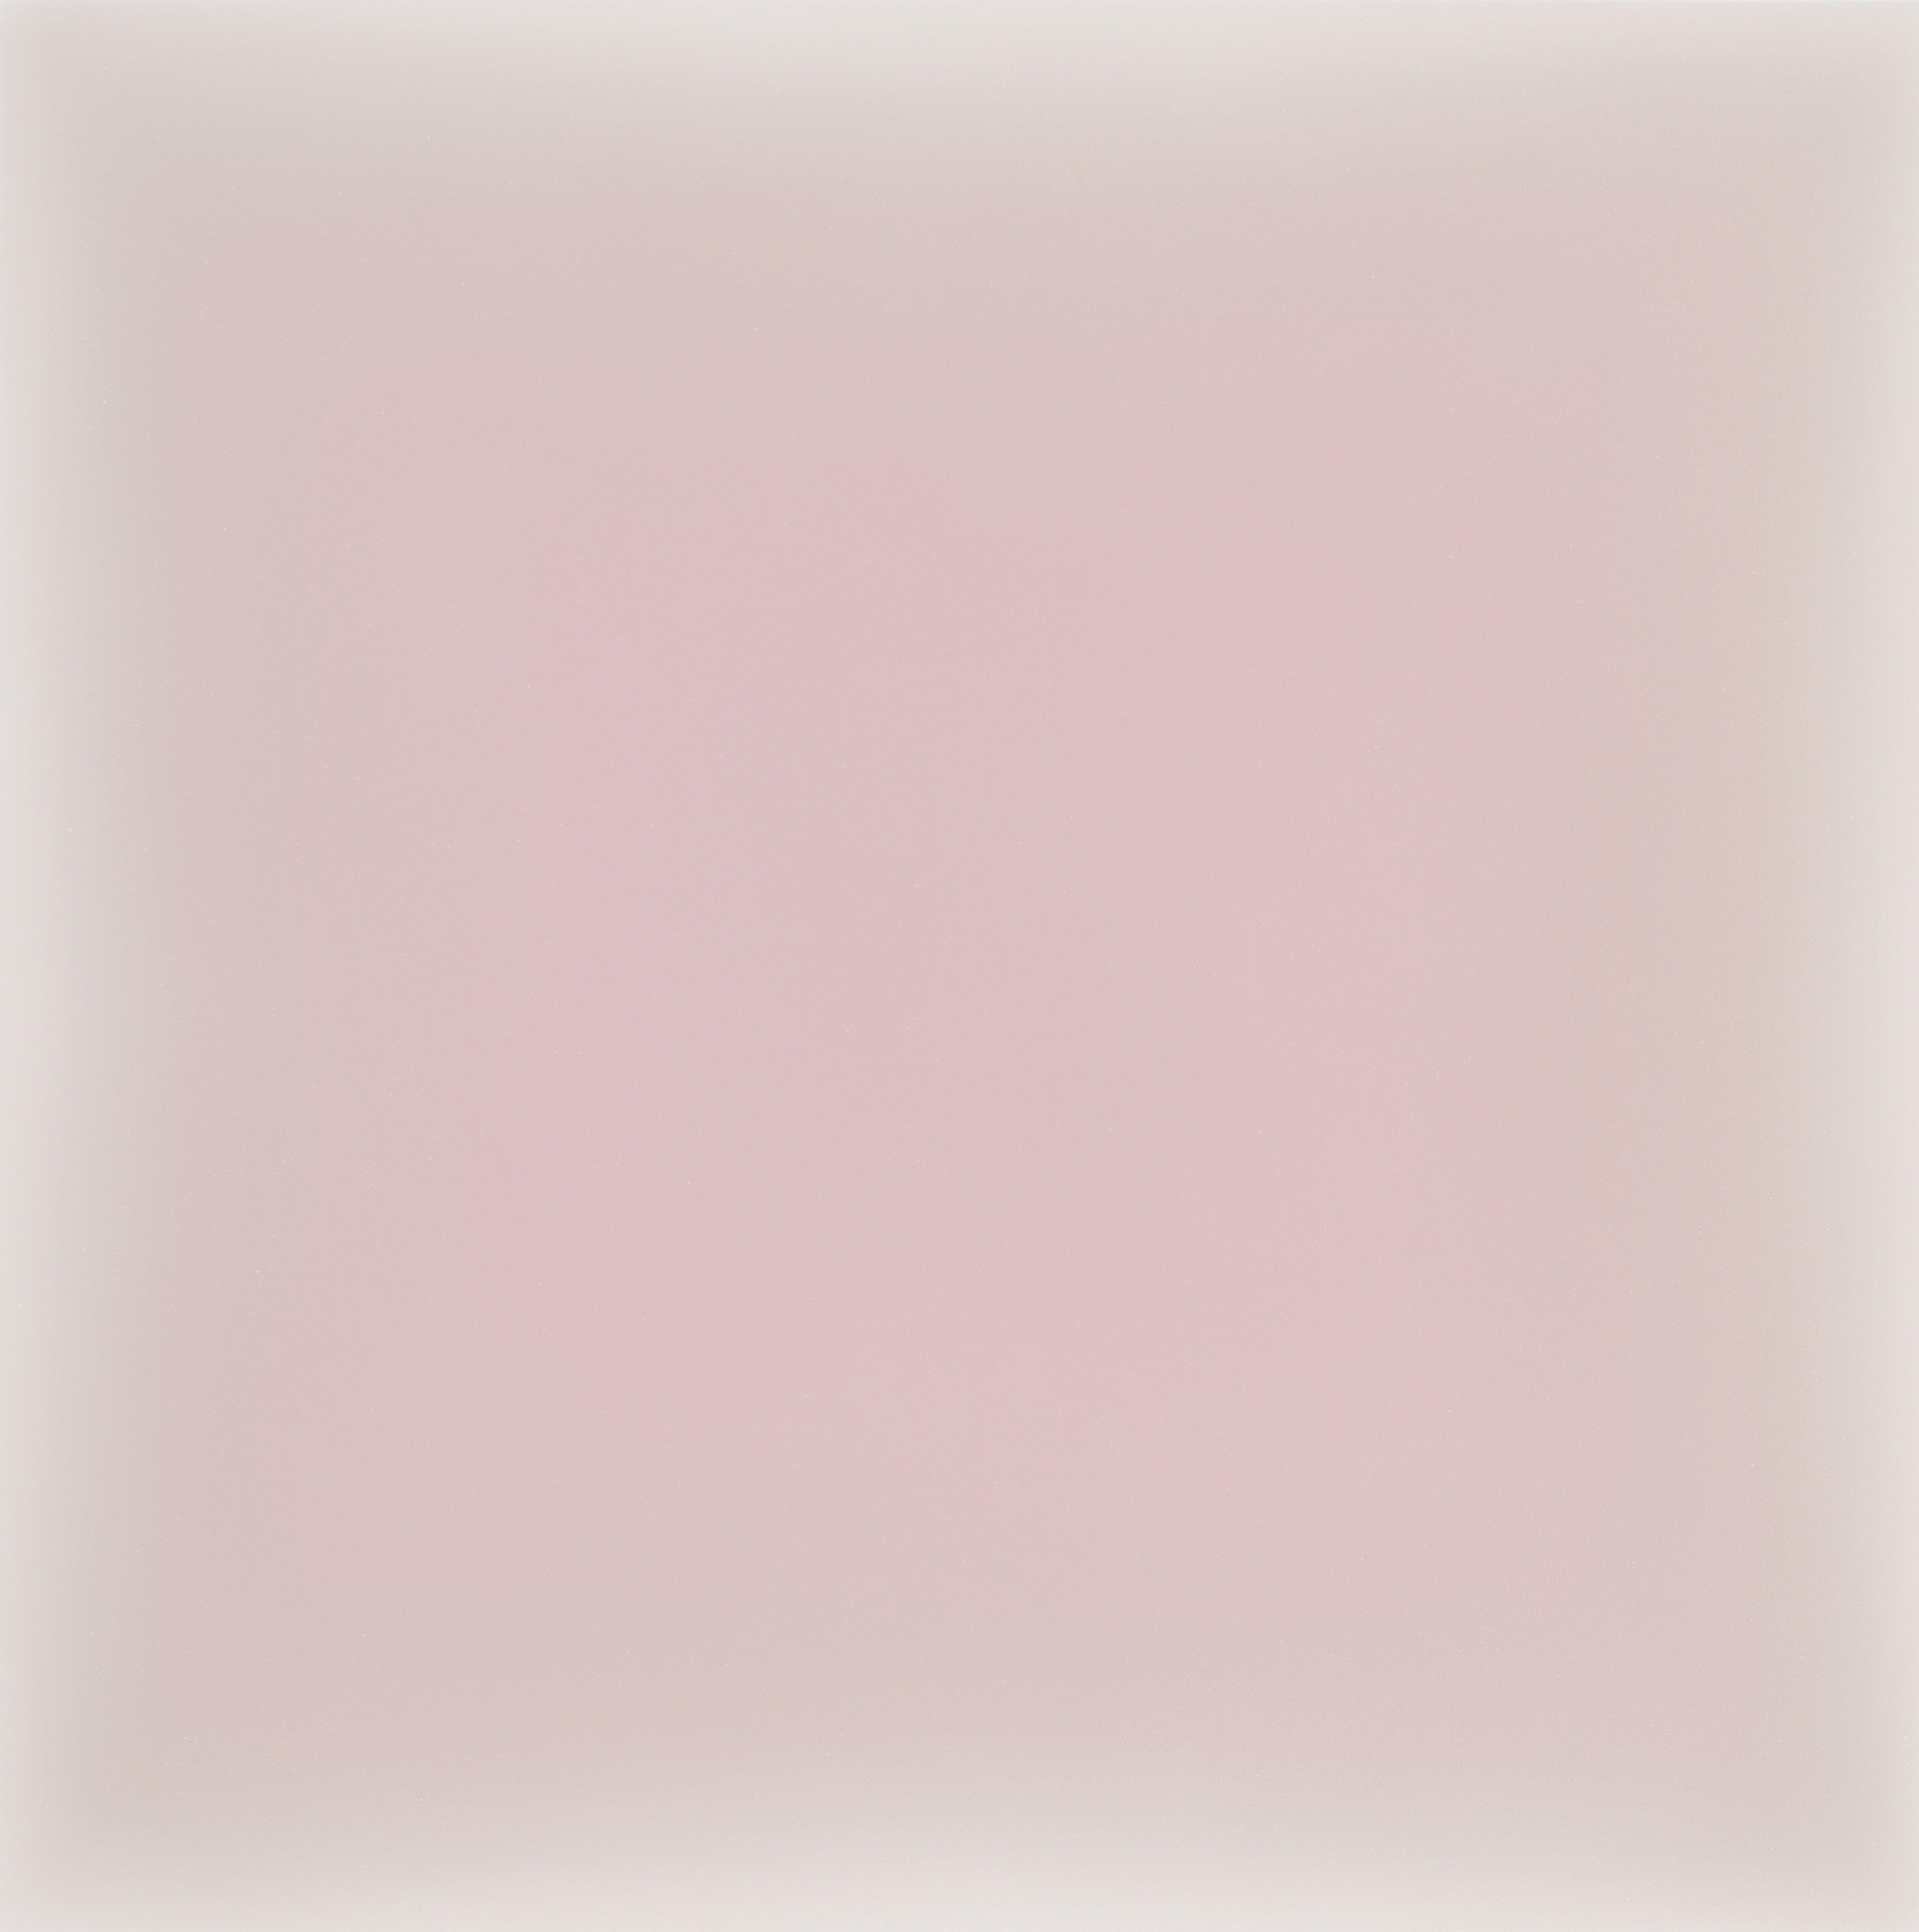 12.23.23, palest pink on raw umber by Gwen Hardie